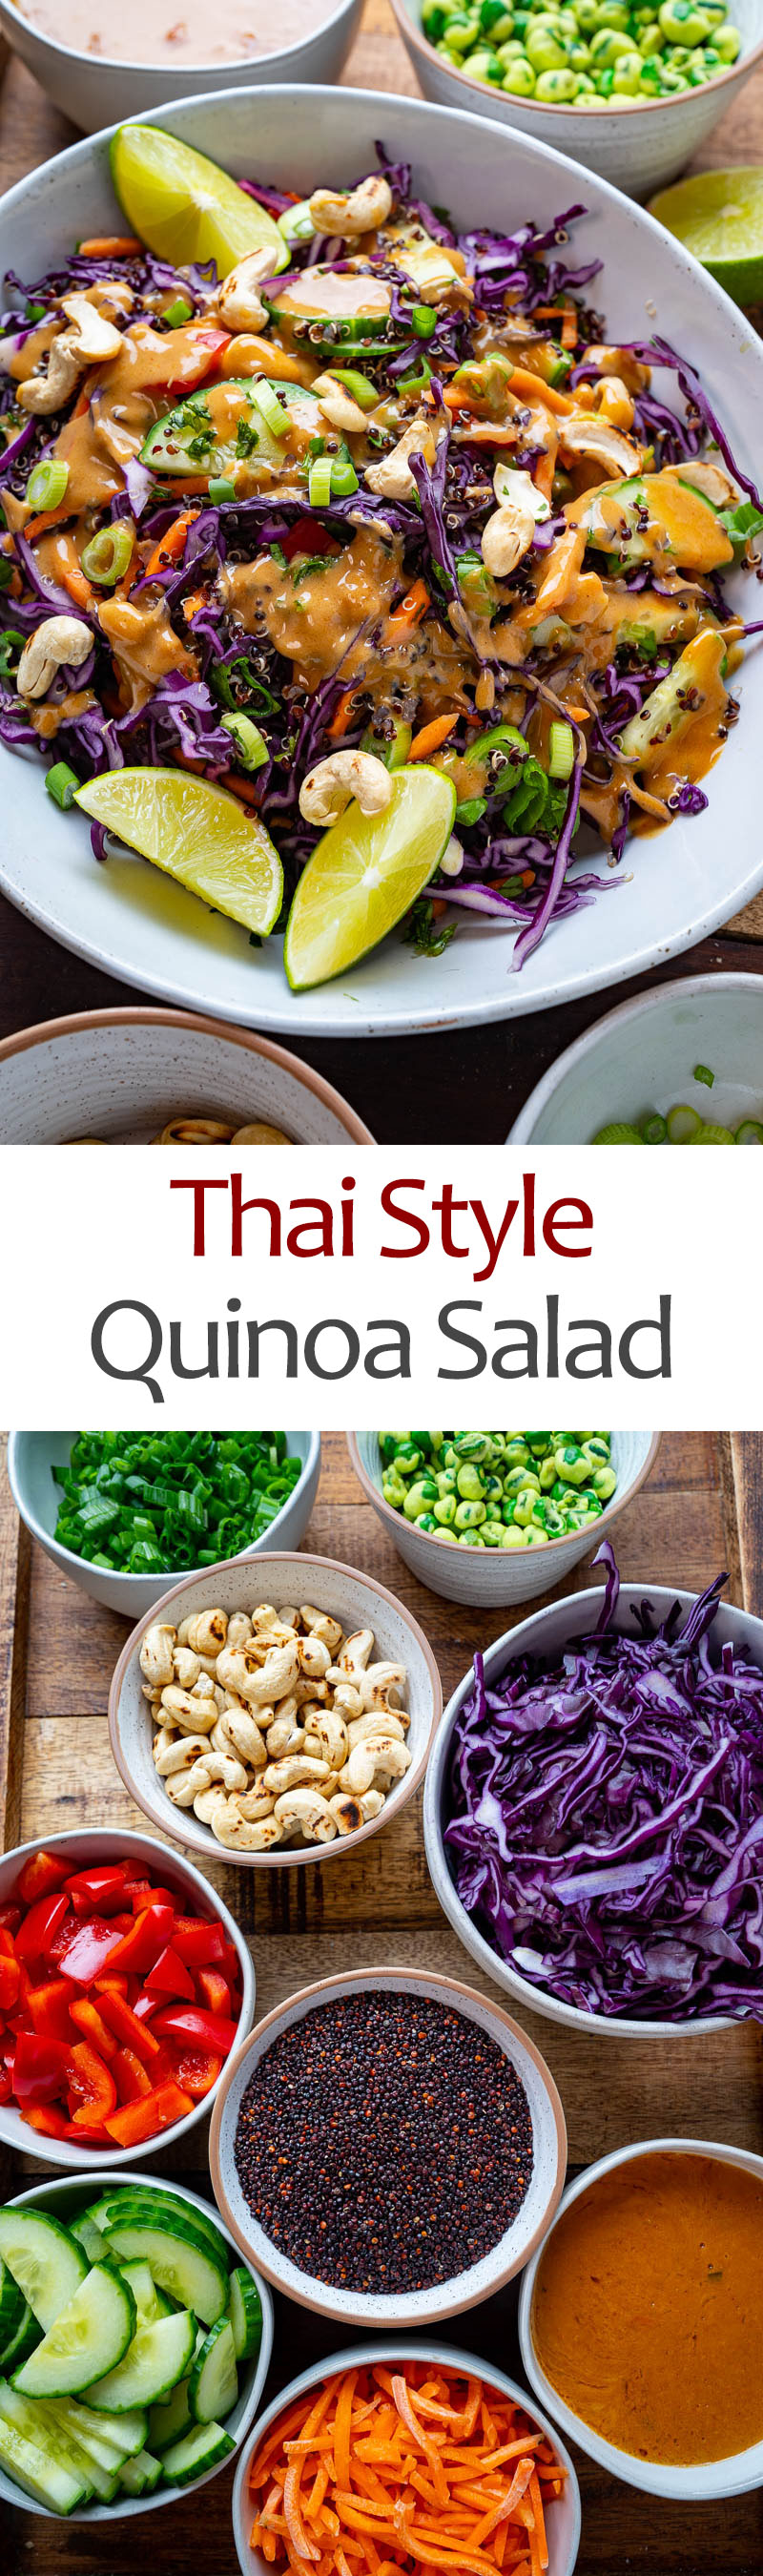 Thai Style Quinoa Salad